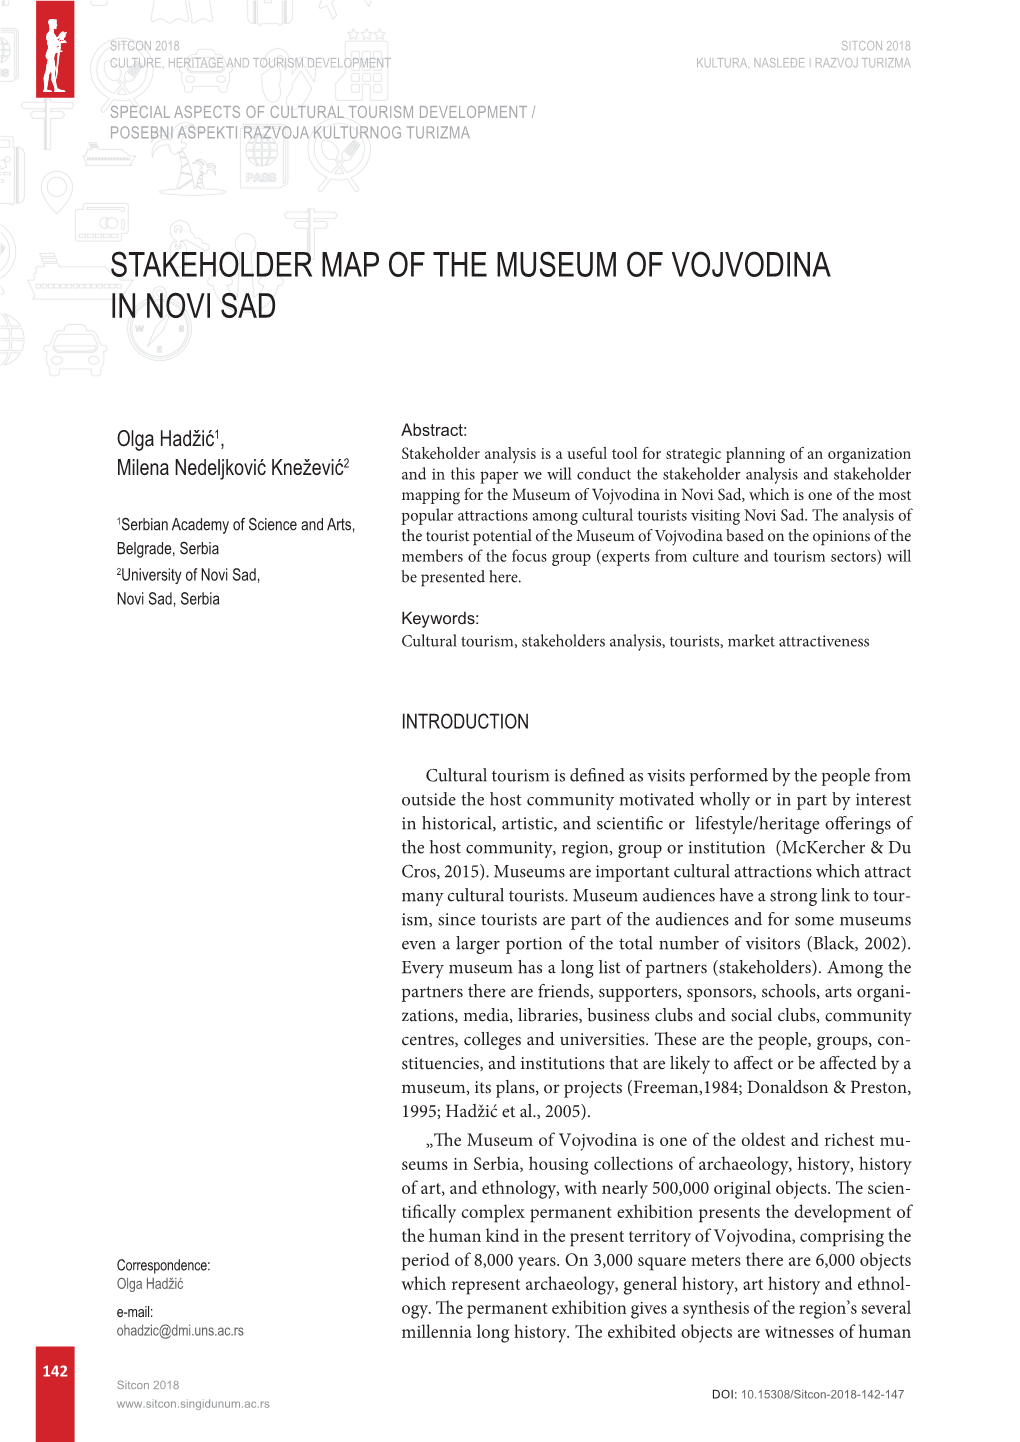 Stakeholder Map of the Museum of Vojvodina in Novi Sad